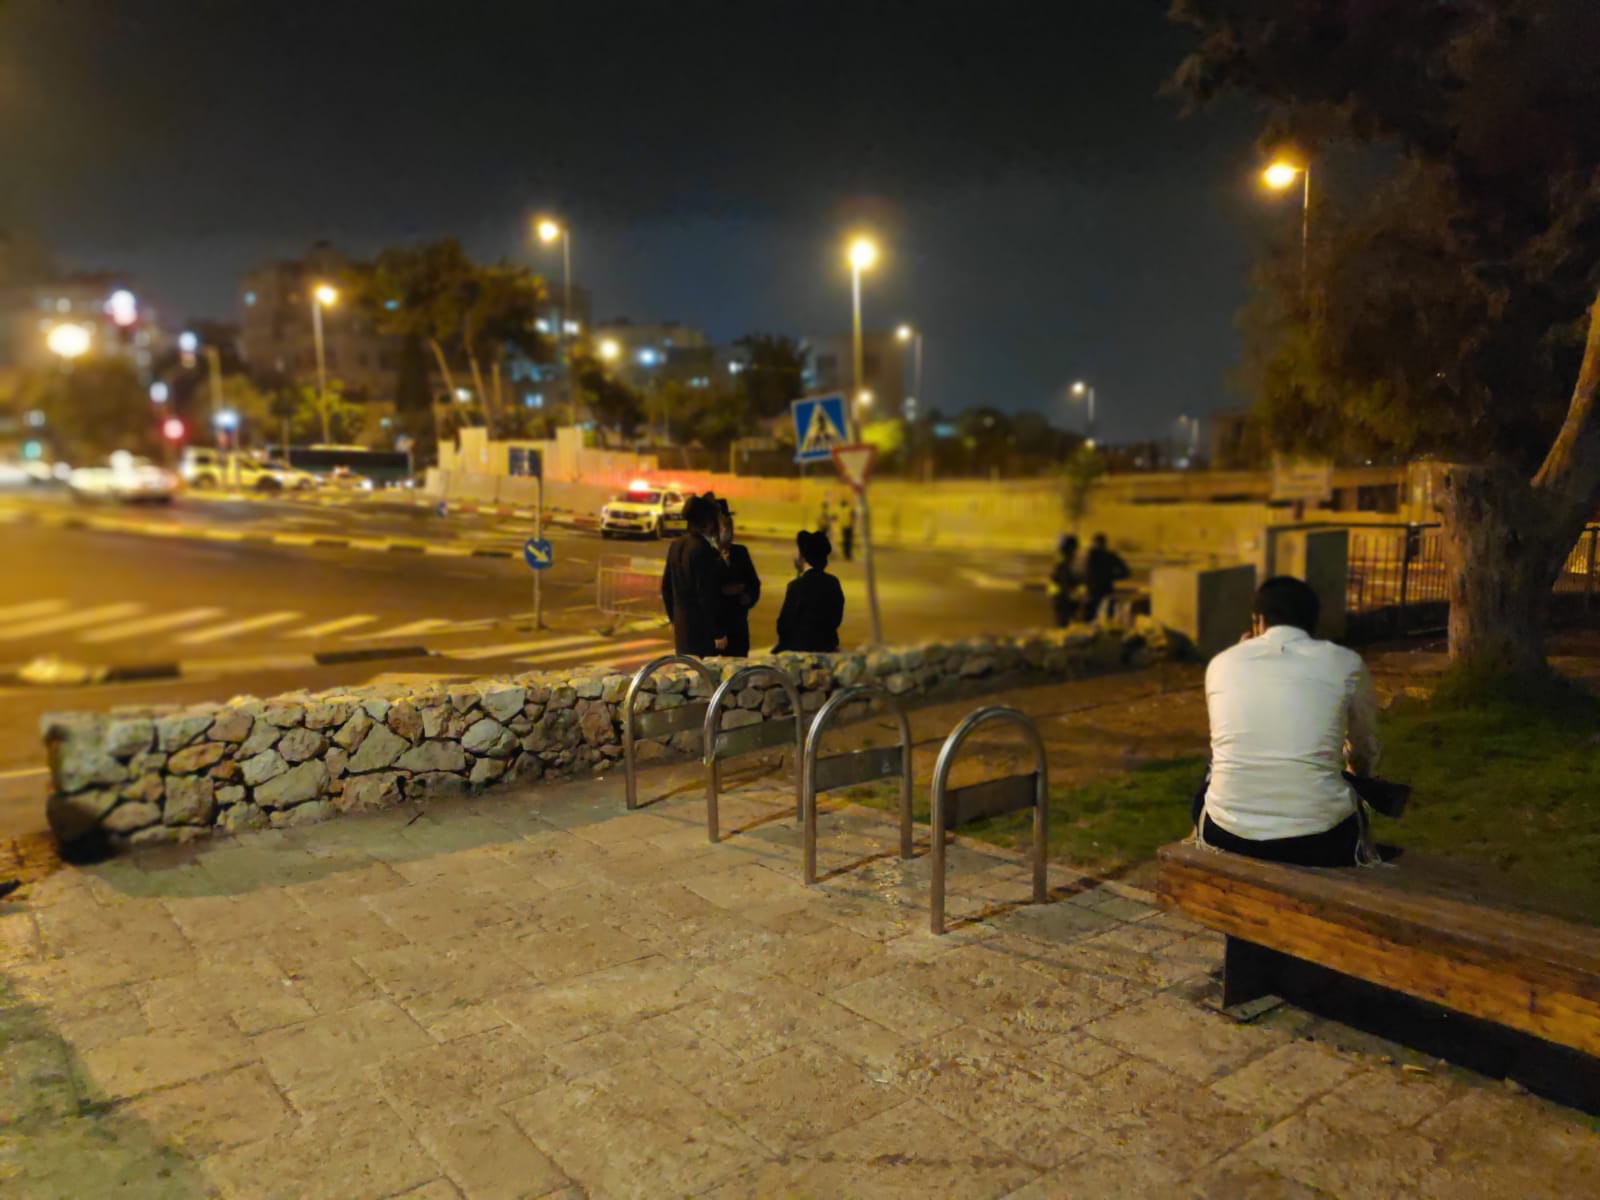 סגר לילי בכניסה לשכונת סנהדריה בירושלים, 8 בספטמבר 2020 (צילום: דוד טברסקי)